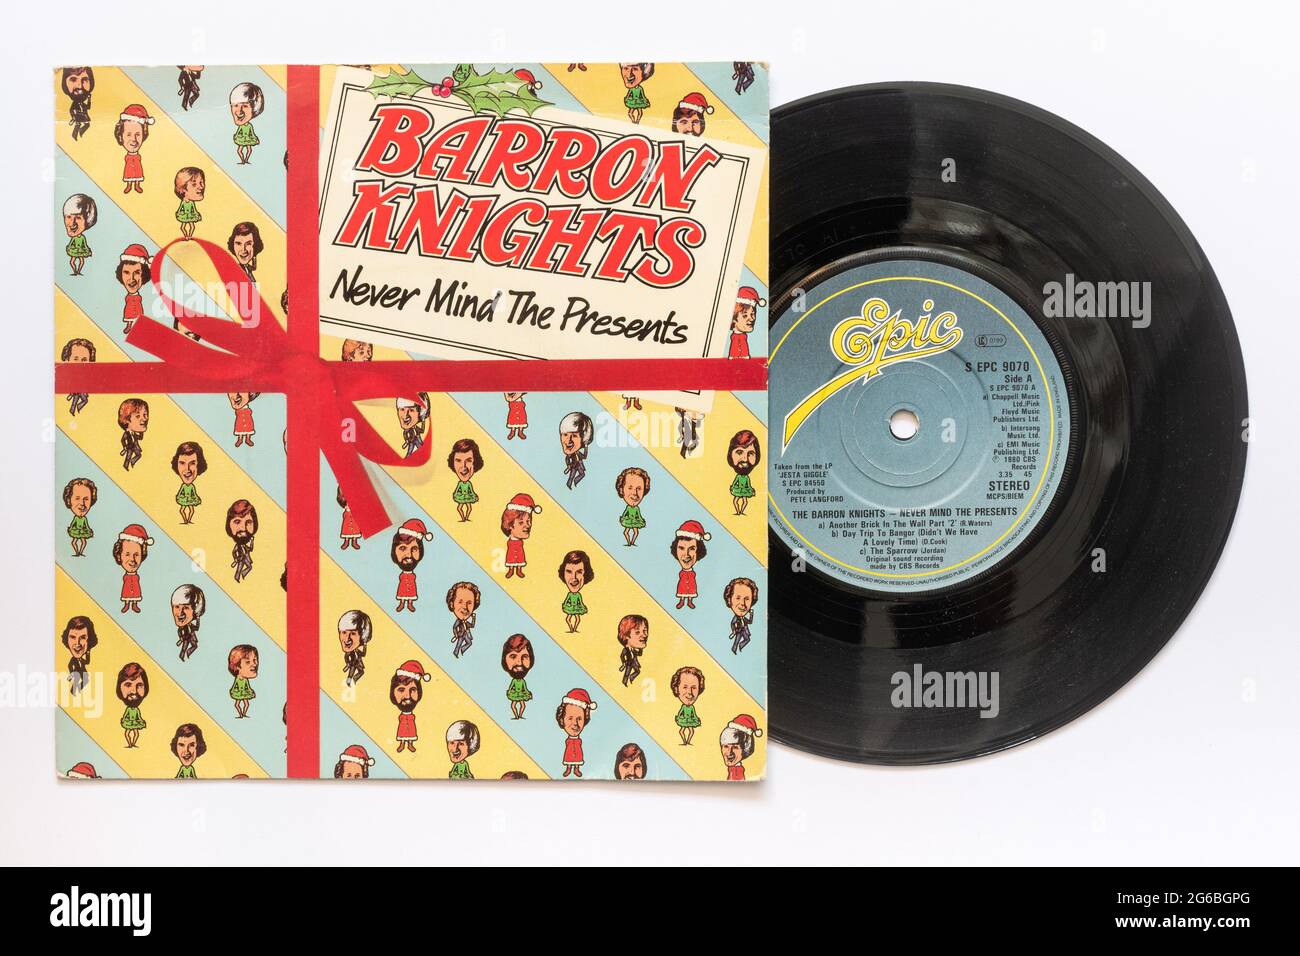 Never Mind the presents by the Barron Knights Pop Group, ein Stock-Foto der 7' Single Vinyl-Schallplatte mit 45 U/min in Bilderhülle Stockfoto